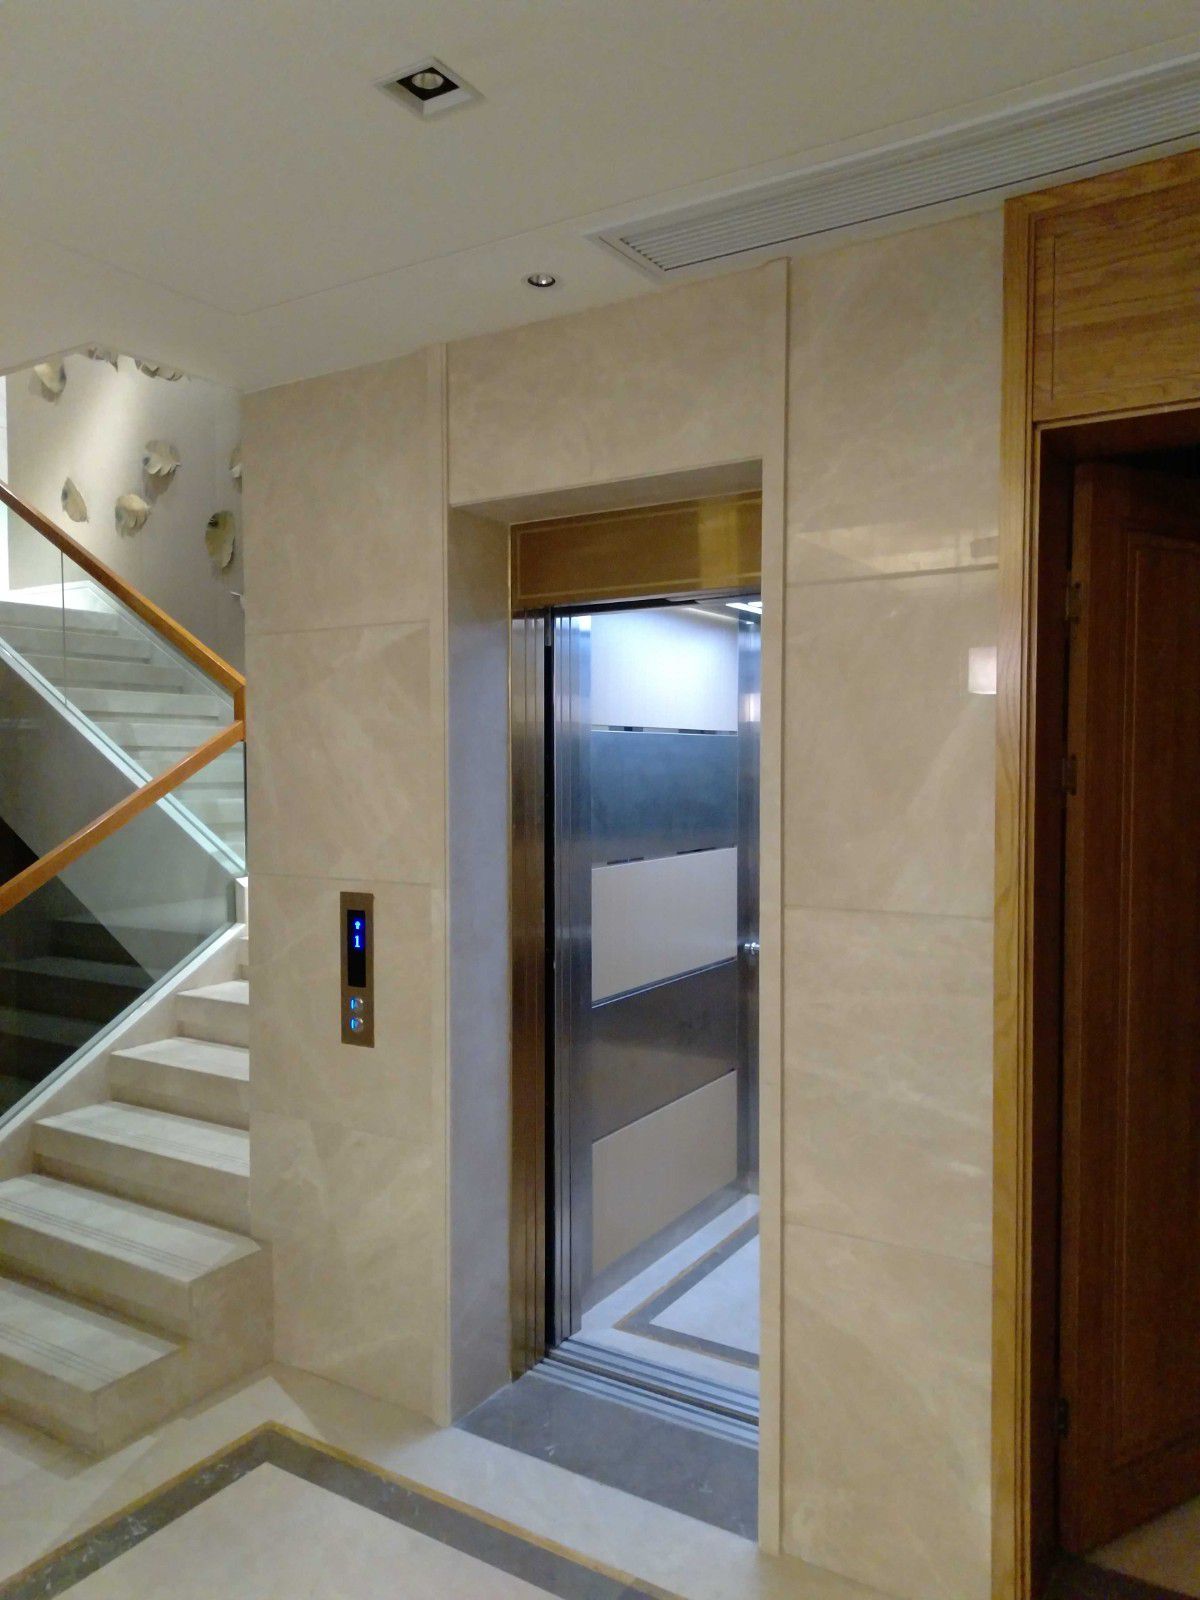 布斯高弗莱堡5层家用电梯小型